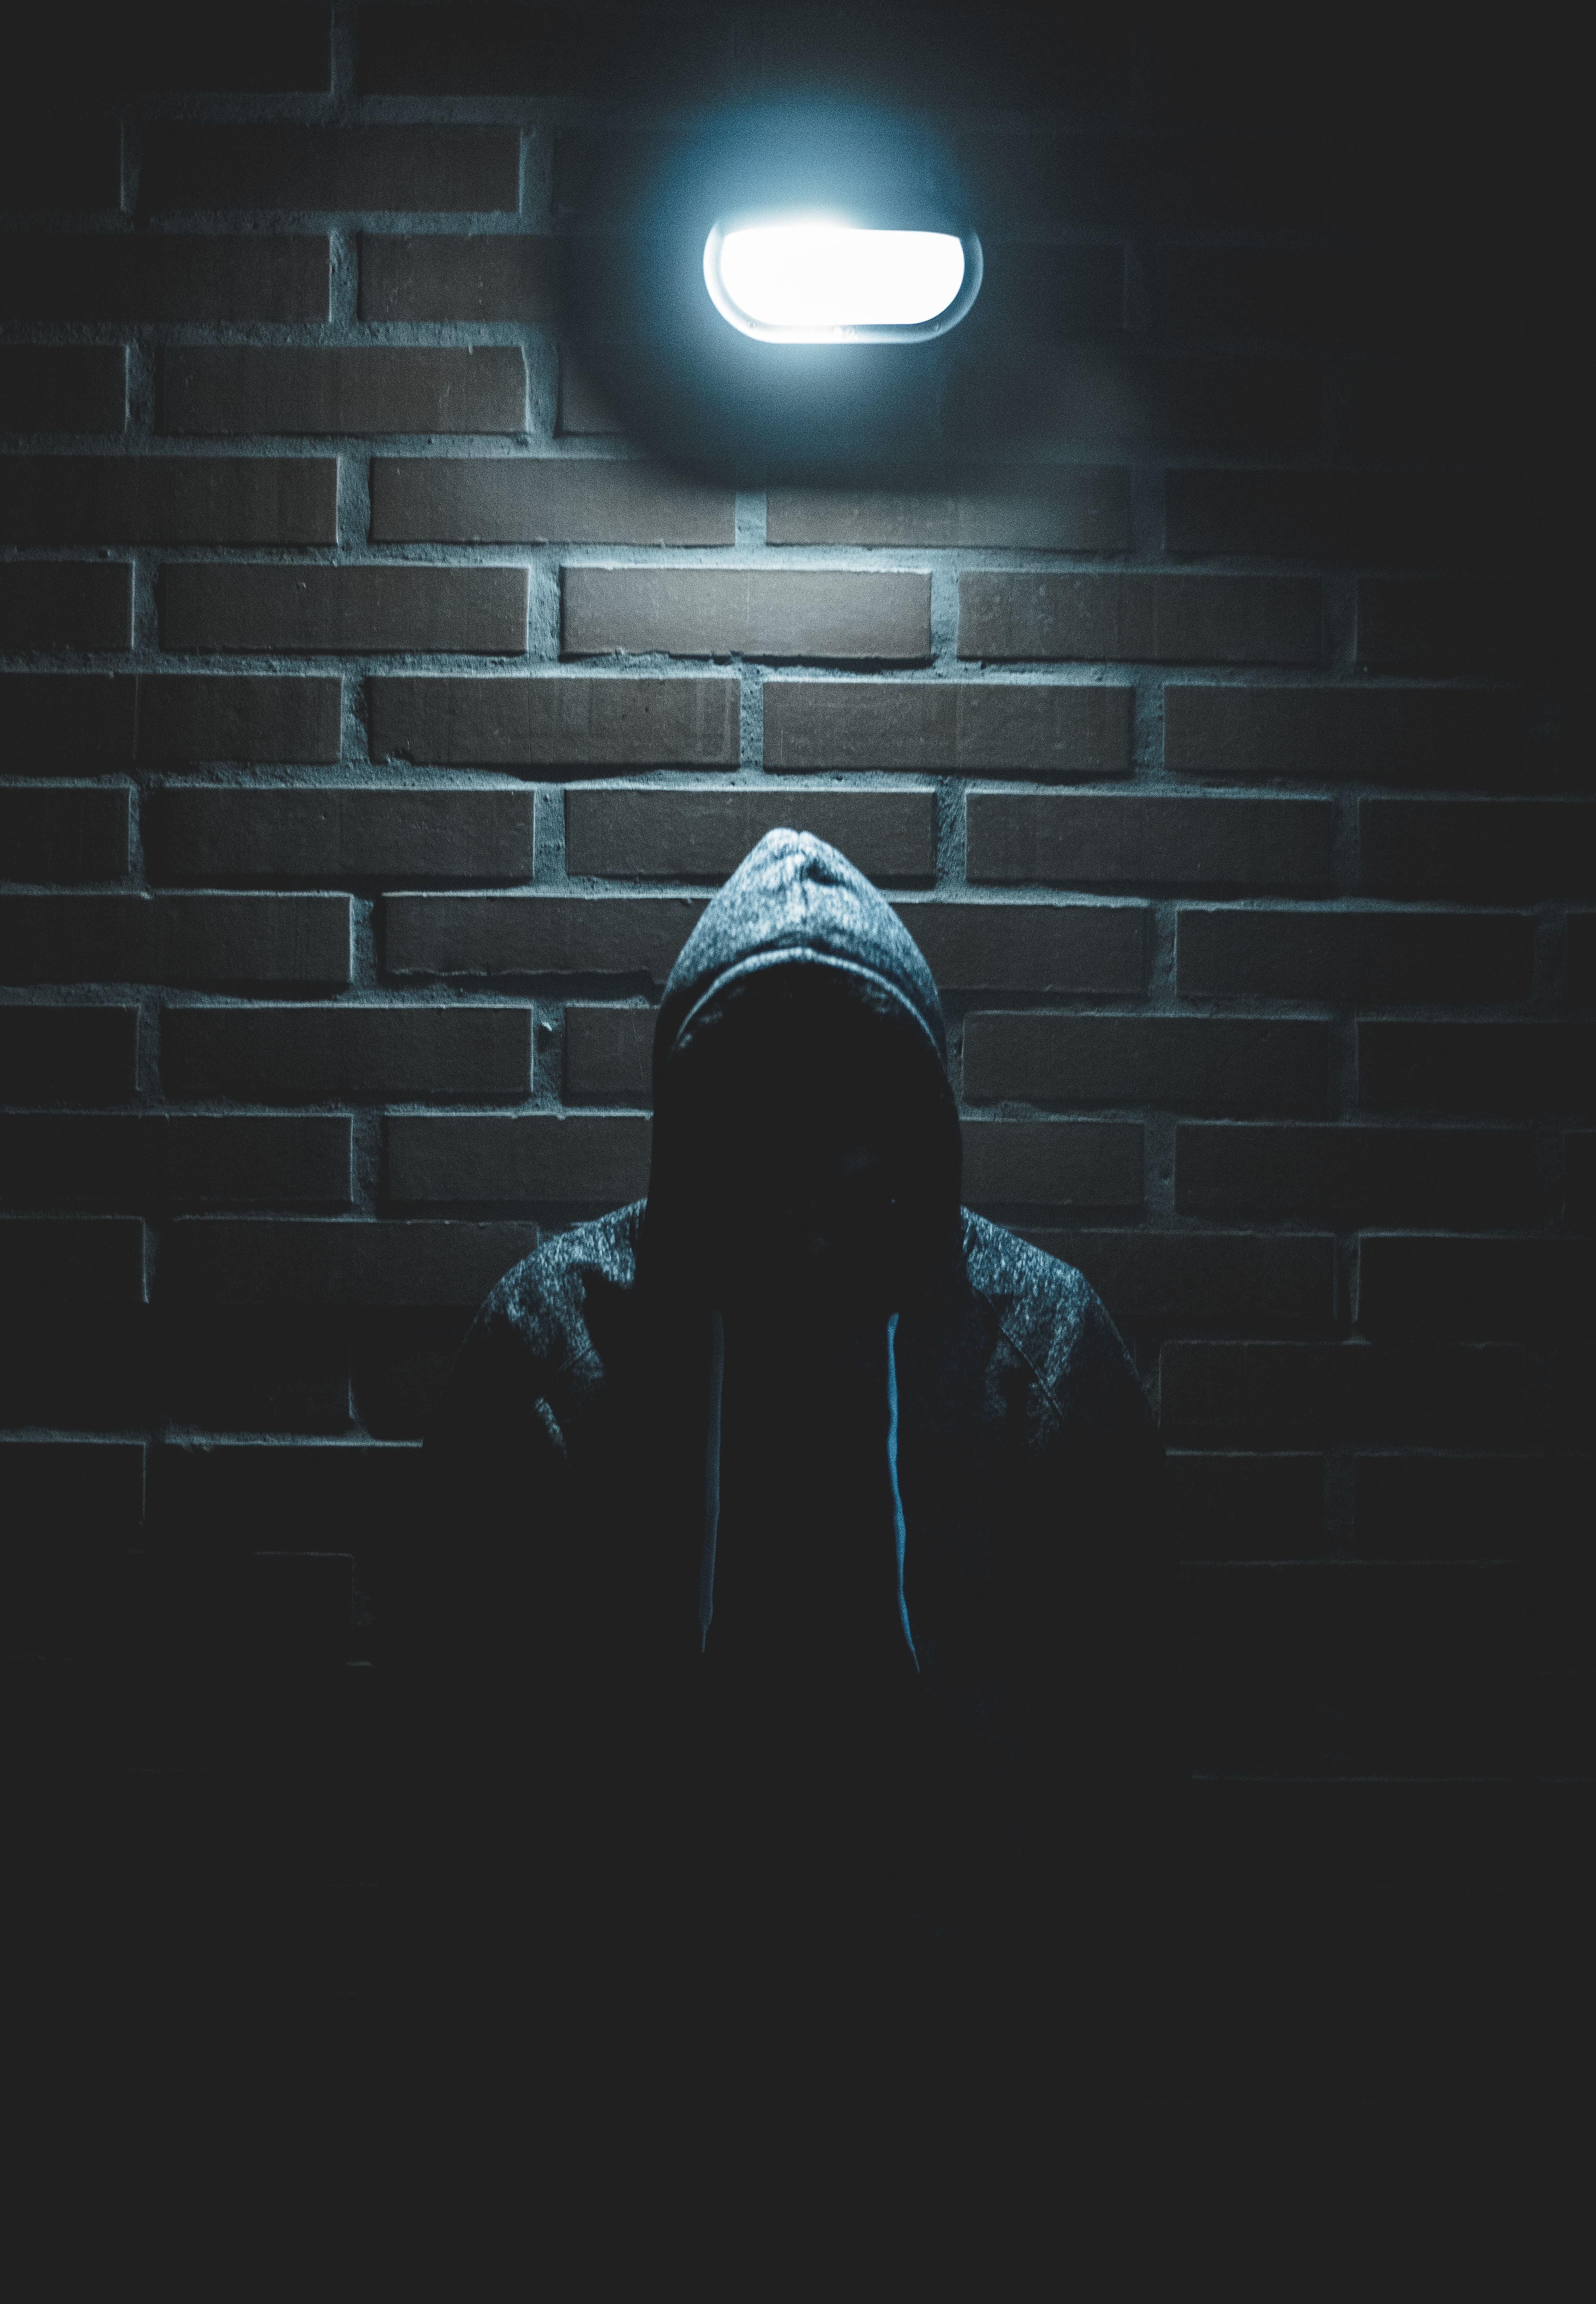 Man in hoodie standing in dark alley; image by Luis Villasmil, via Unsplash.com.